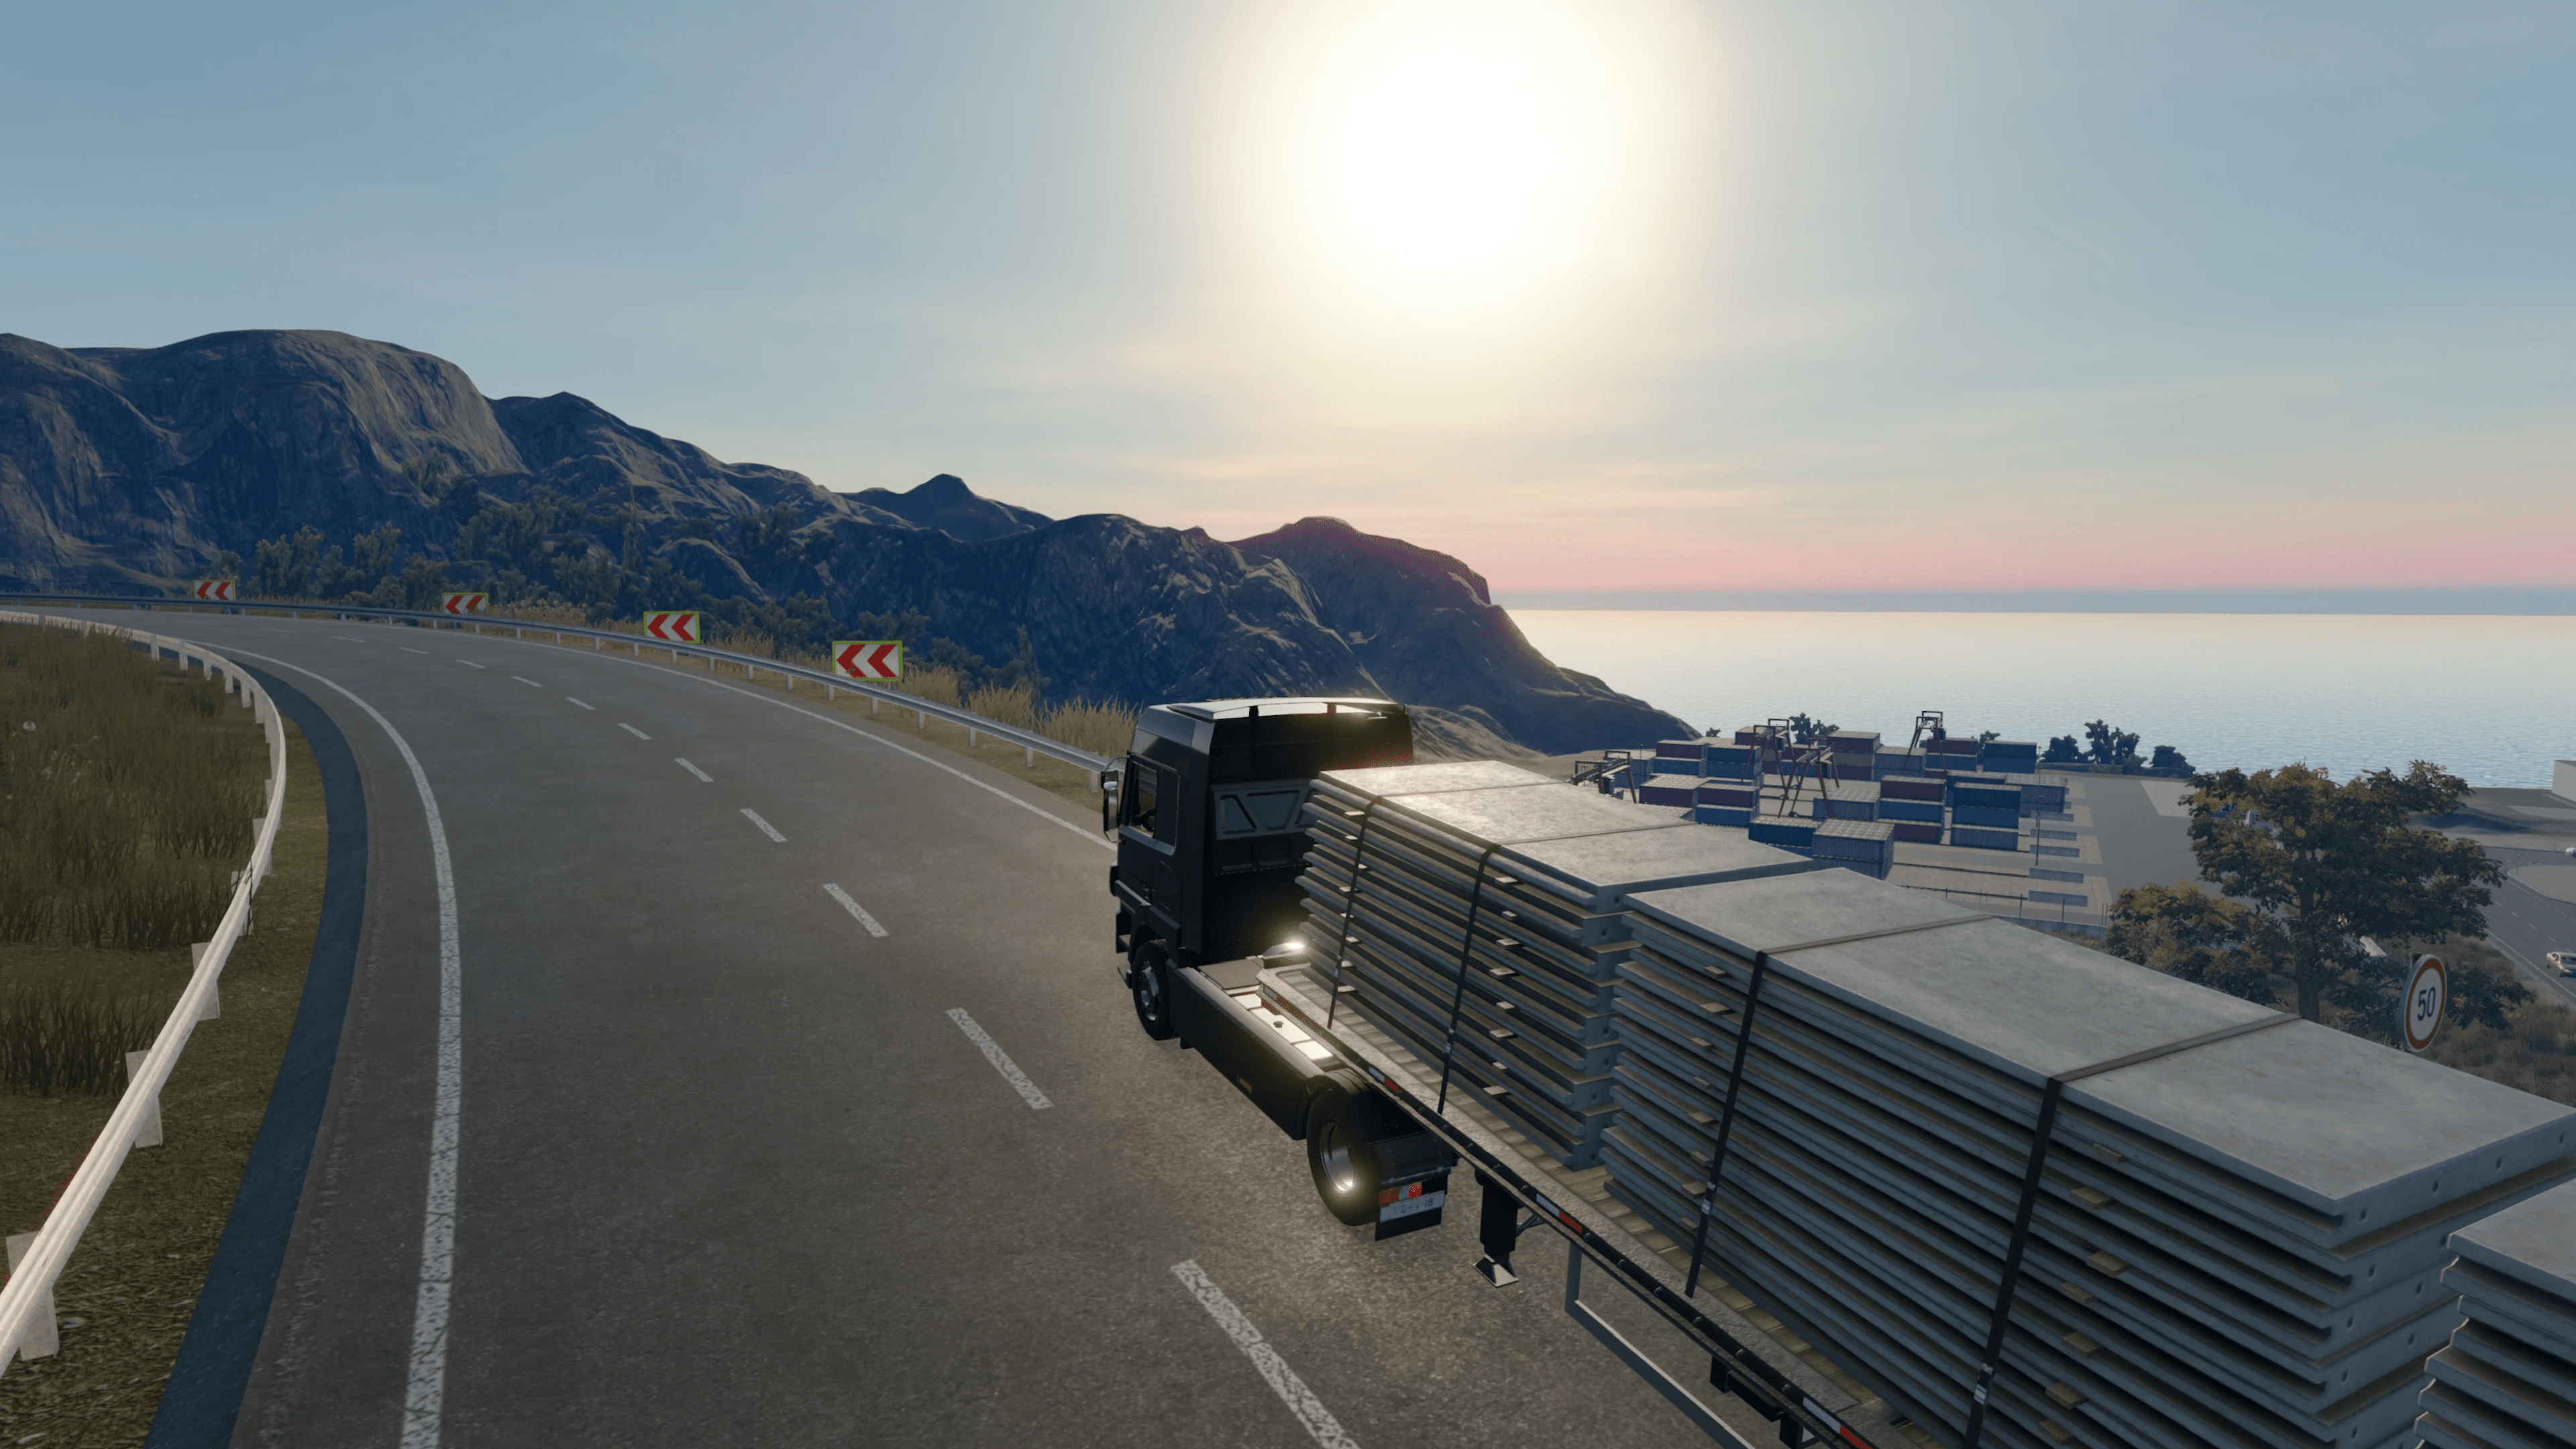 Truck Driver – Xbox One – Código 25 Dígitos – WOW Games